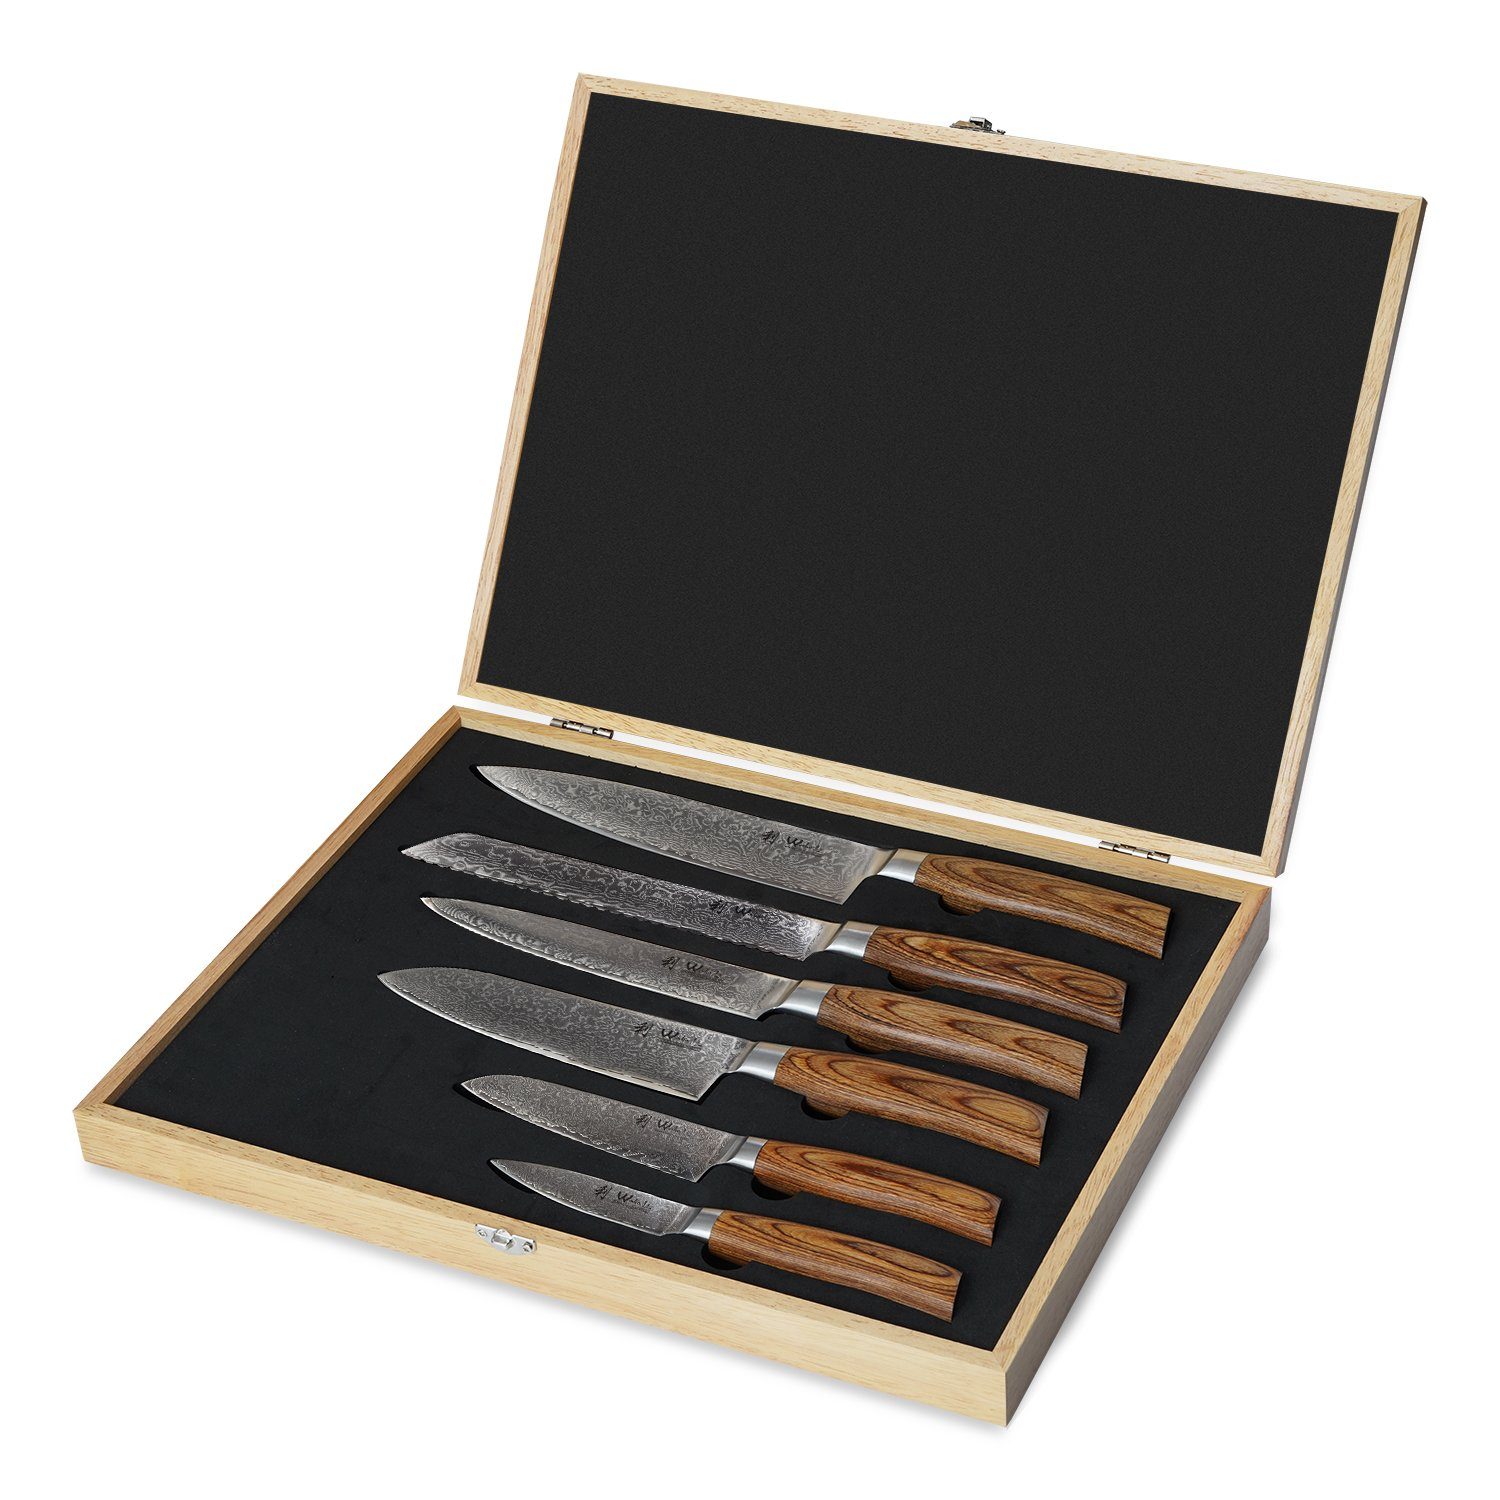 6er Damastmesser-Set Messer-Set Pakkaholz I Wakoli 8-20cm I I Edib Holzbox Klingen Pro